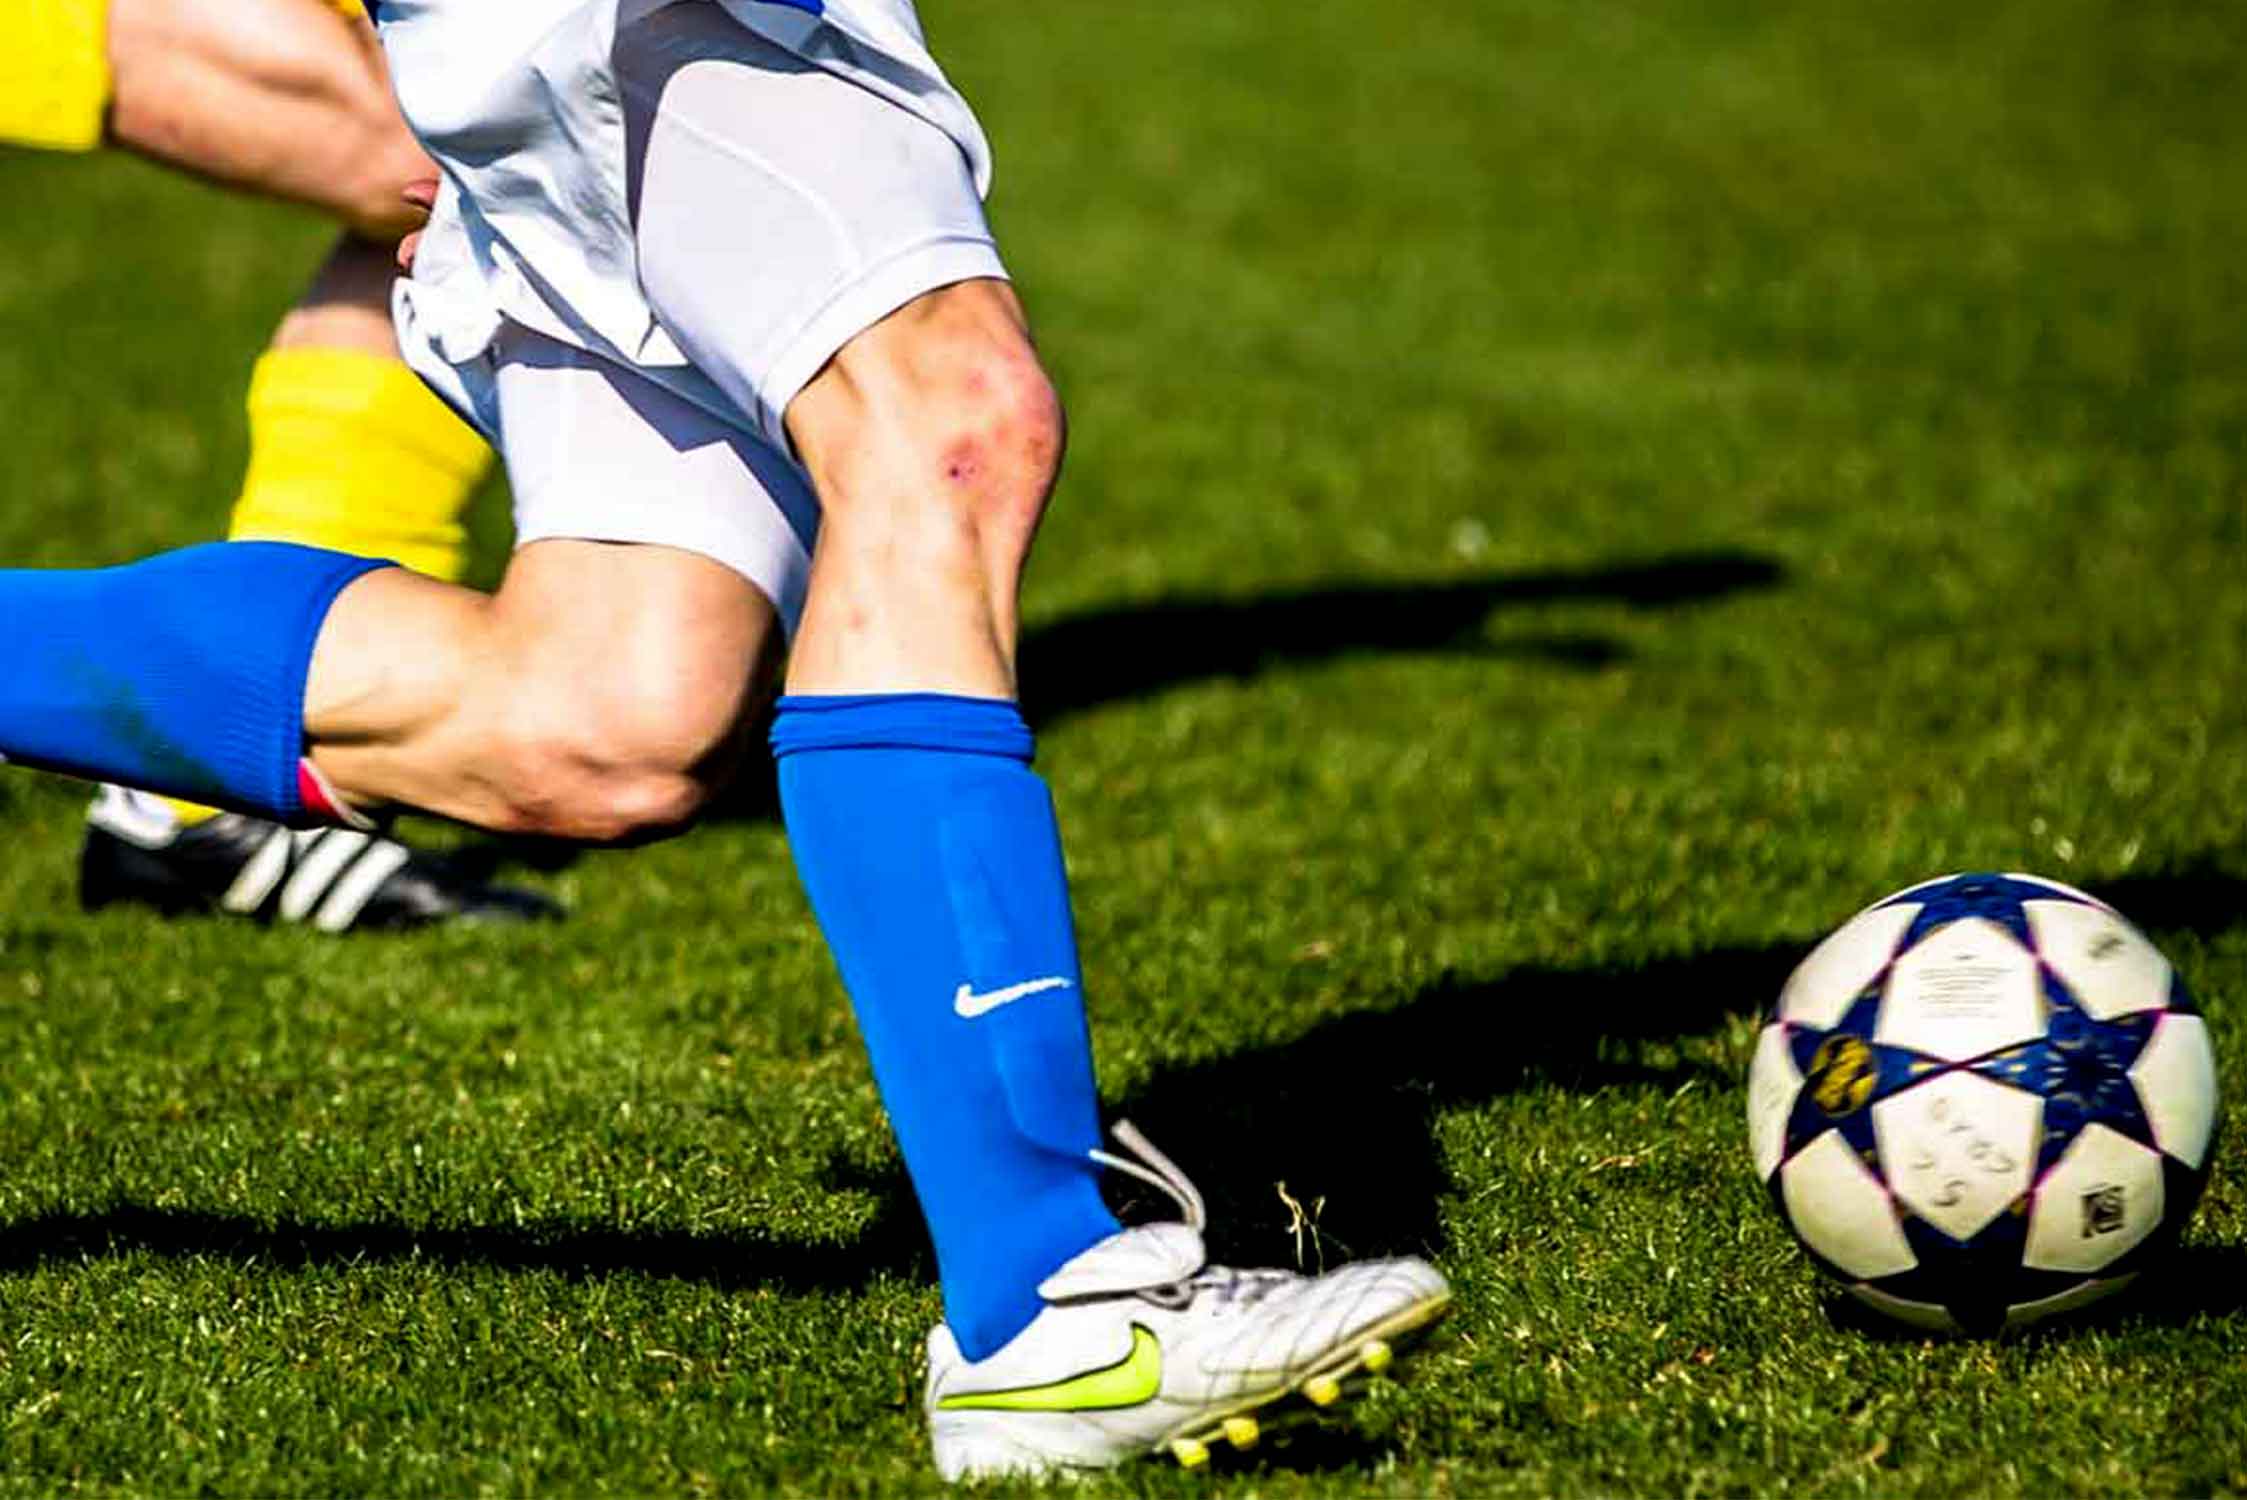 Guía De Apuestas De Fútbol: ¿Cómo Aprender a Apostar En Fútbol?